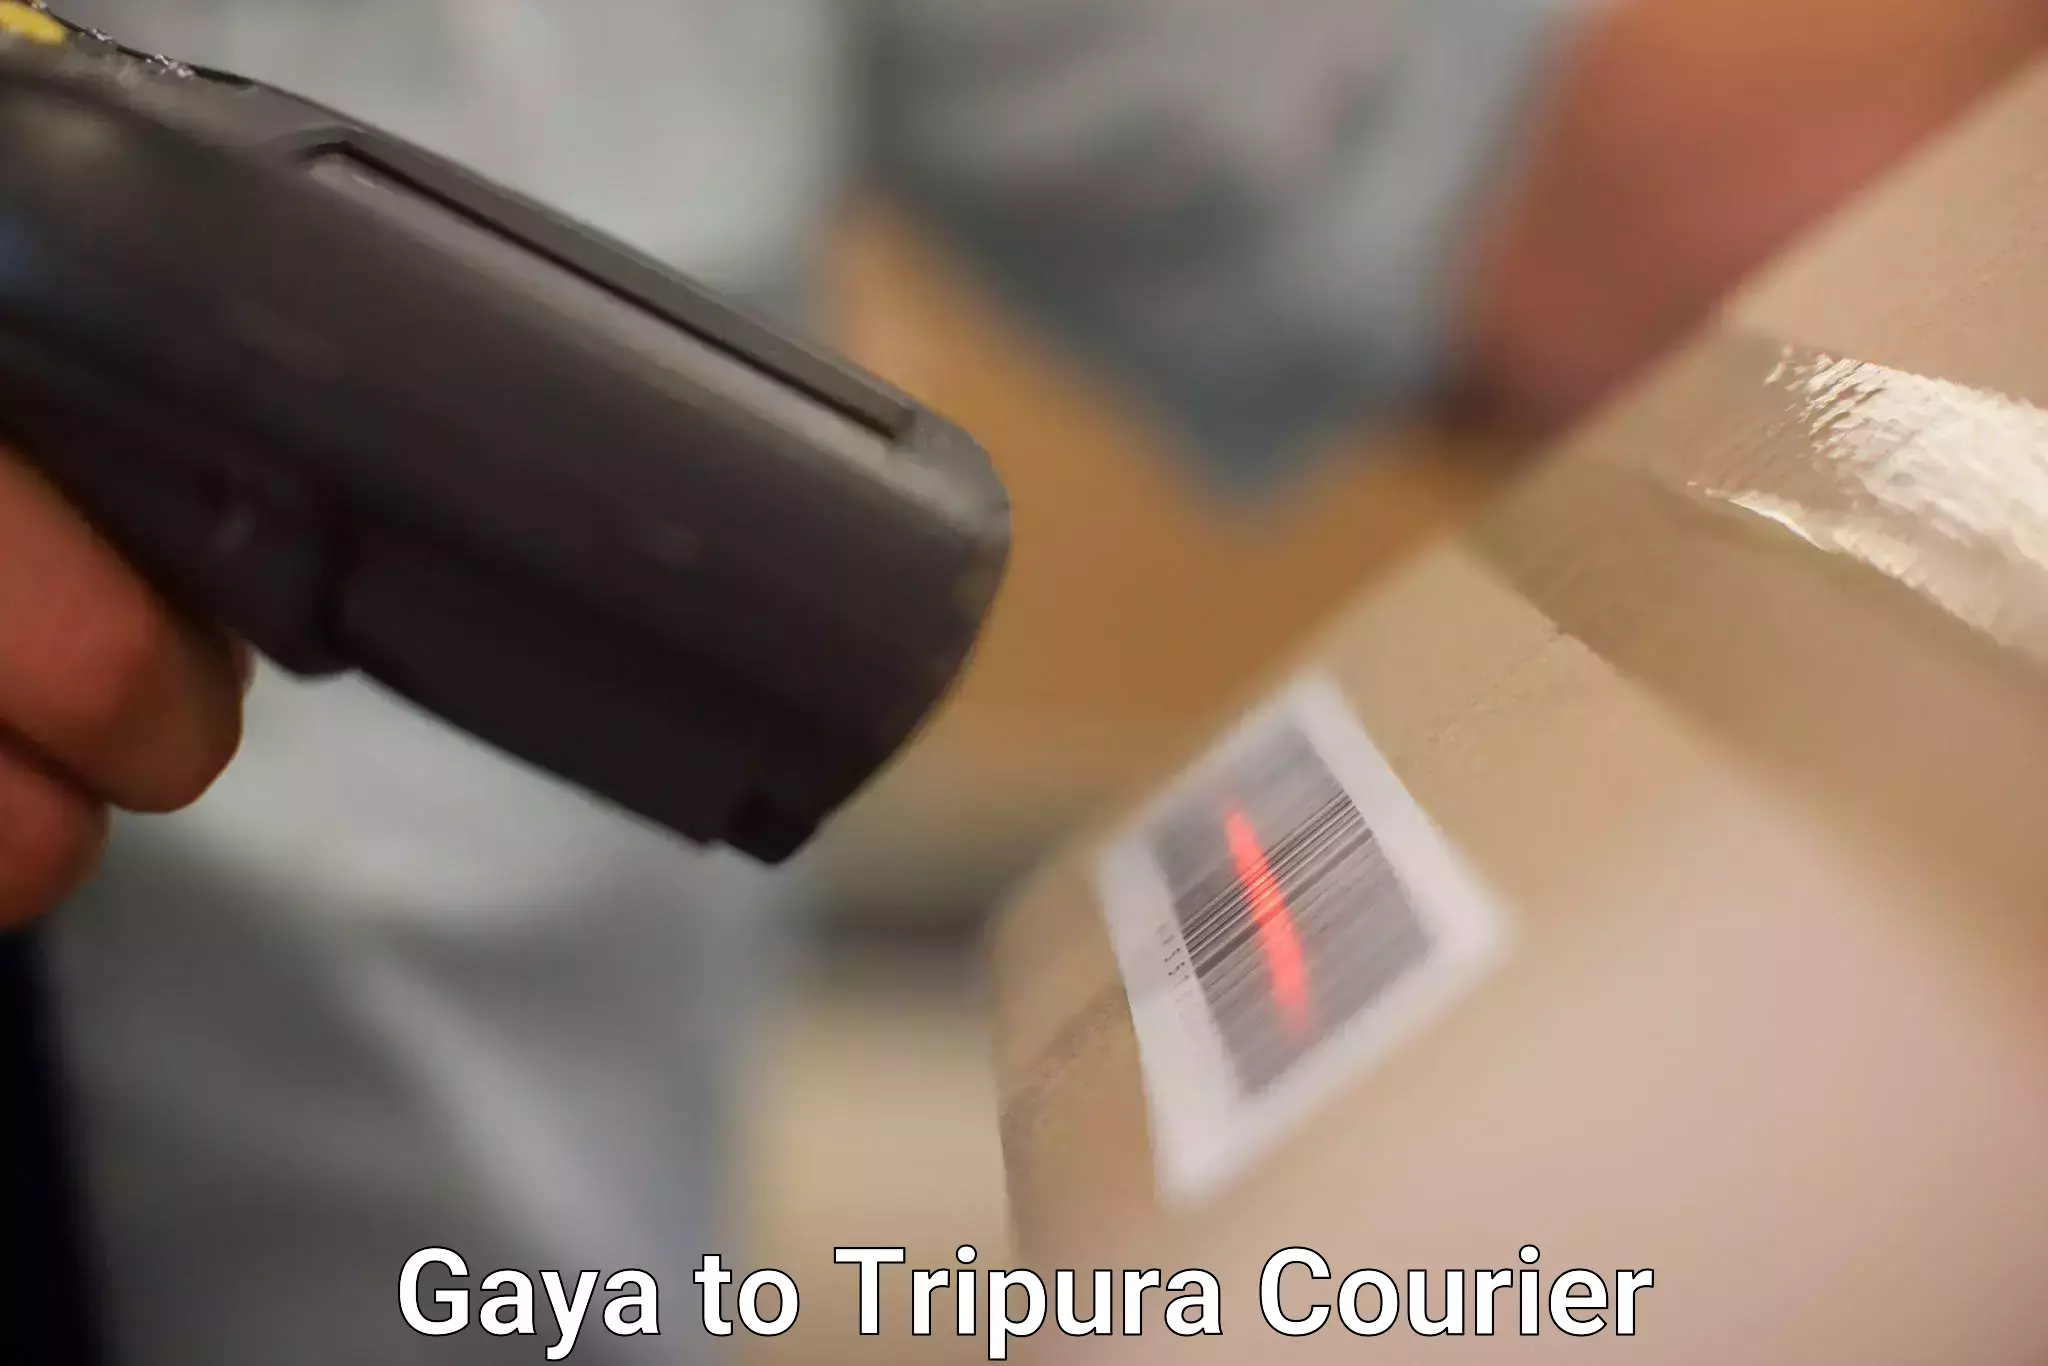 Cargo delivery service Gaya to Bishalgarh